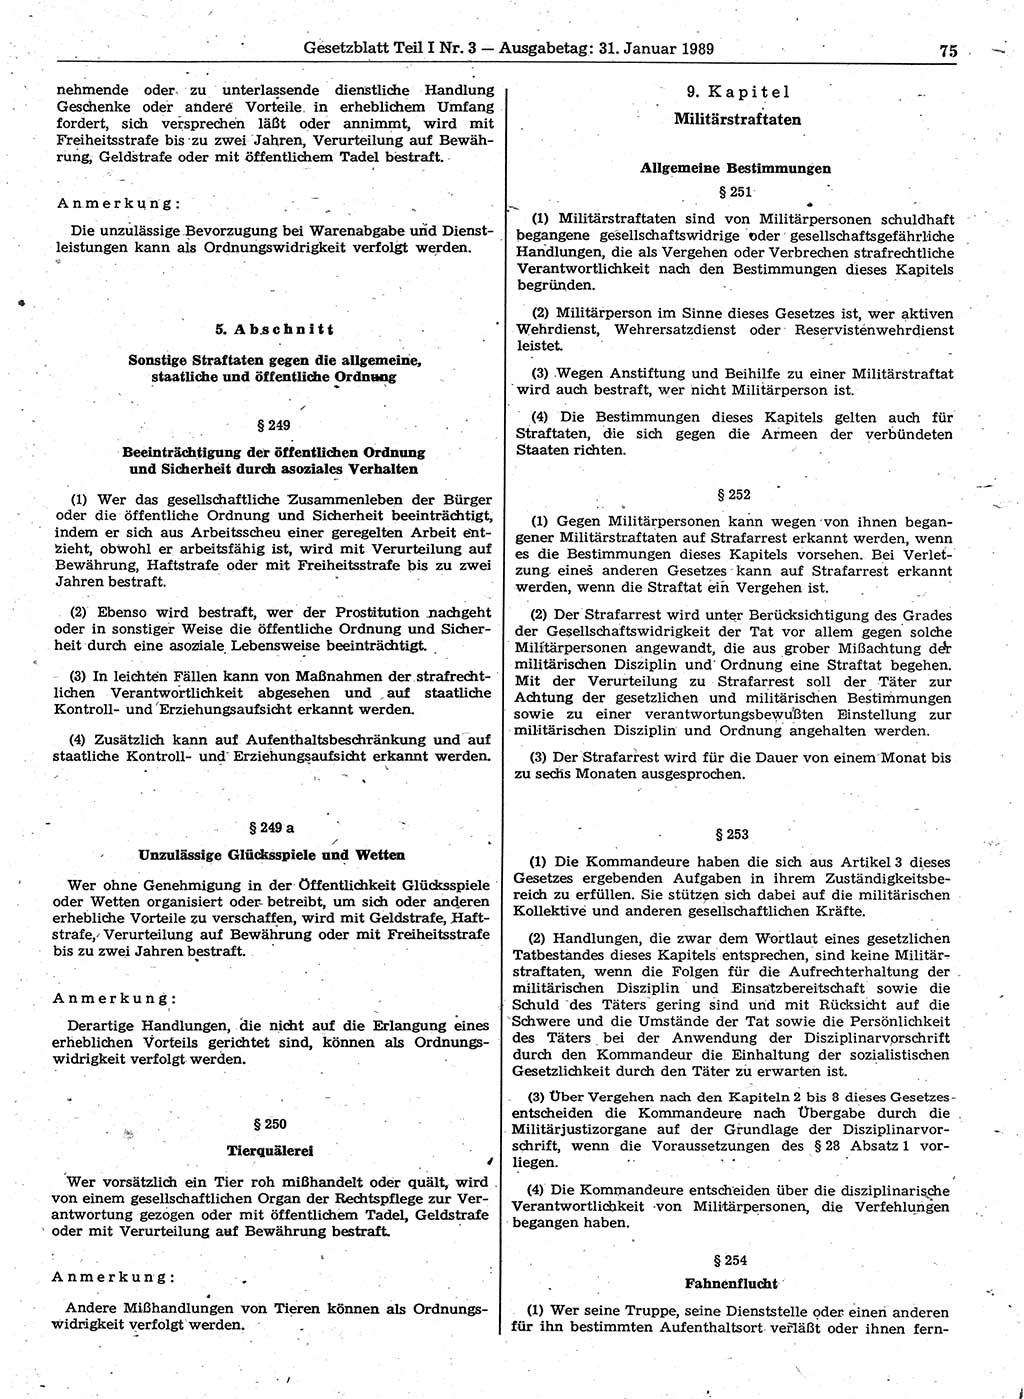 Gesetzblatt (GBl.) der Deutschen Demokratischen Republik (DDR) Teil Ⅰ 1989, Seite 75 (GBl. DDR Ⅰ 1989, S. 75)